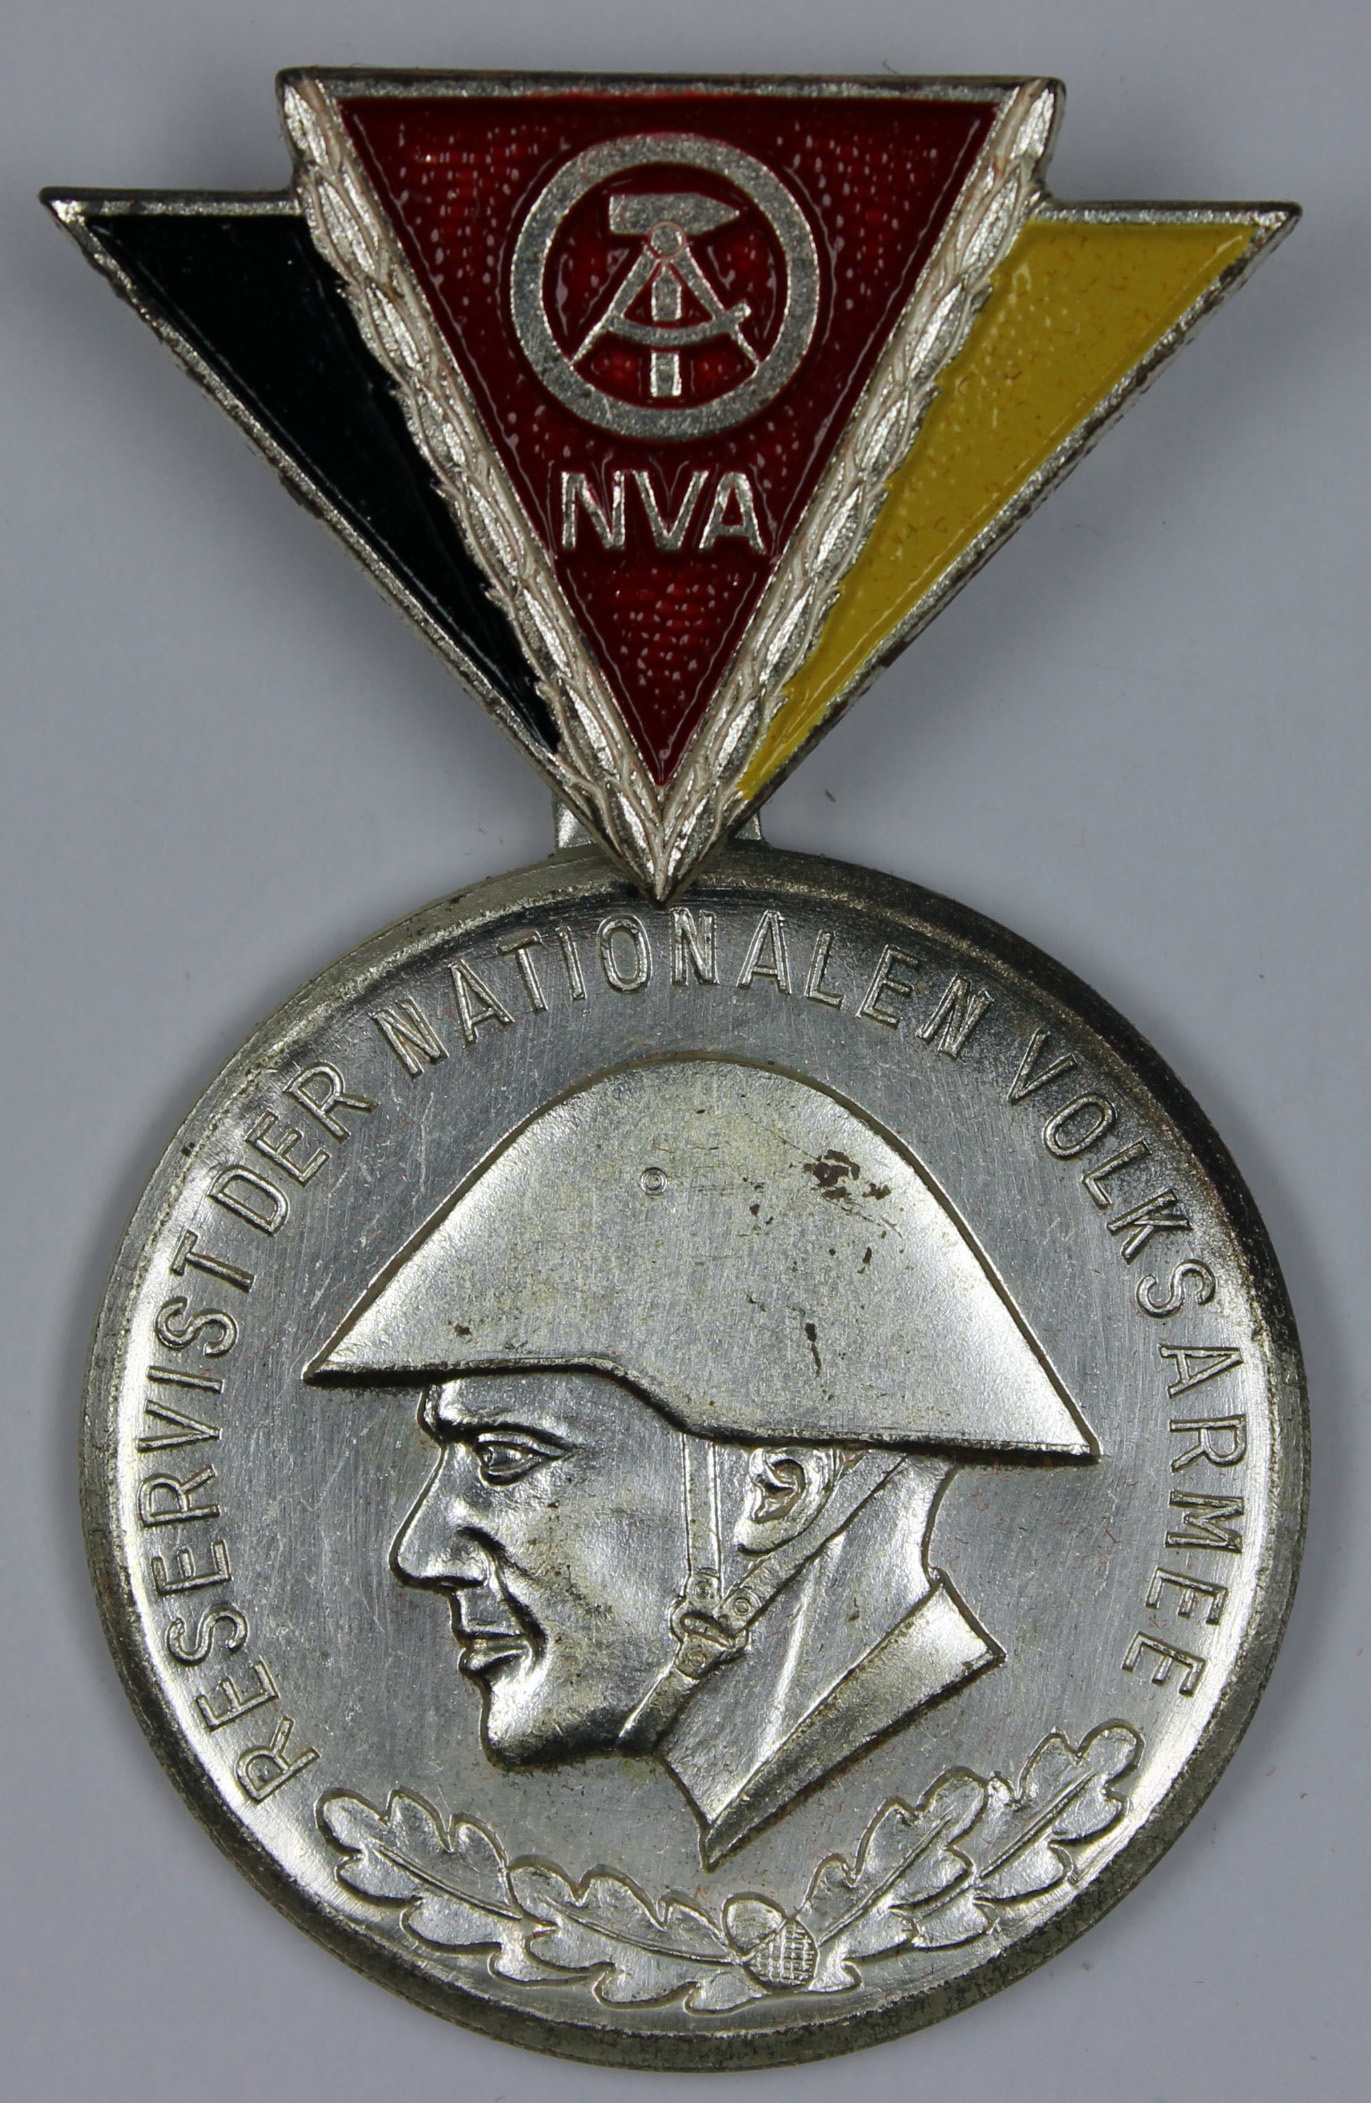 Richard-Sorge-Medaille für Kampfverdienste Bronze DDR-Orden NVA Bruderarmee